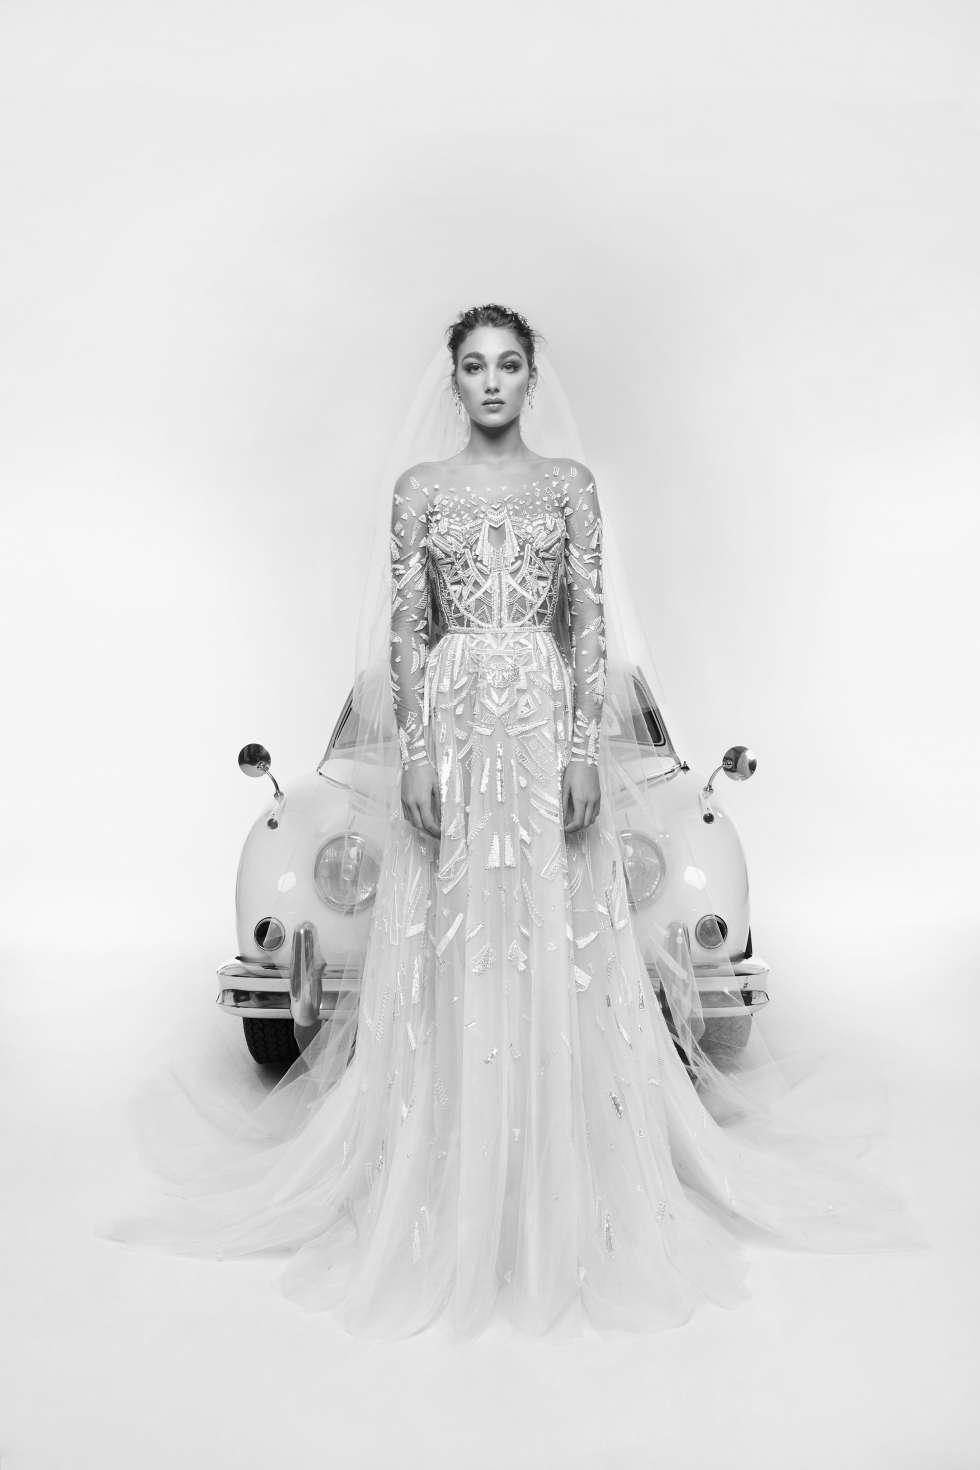 The Zuhair Murad 2019 Wedding Dress Collection